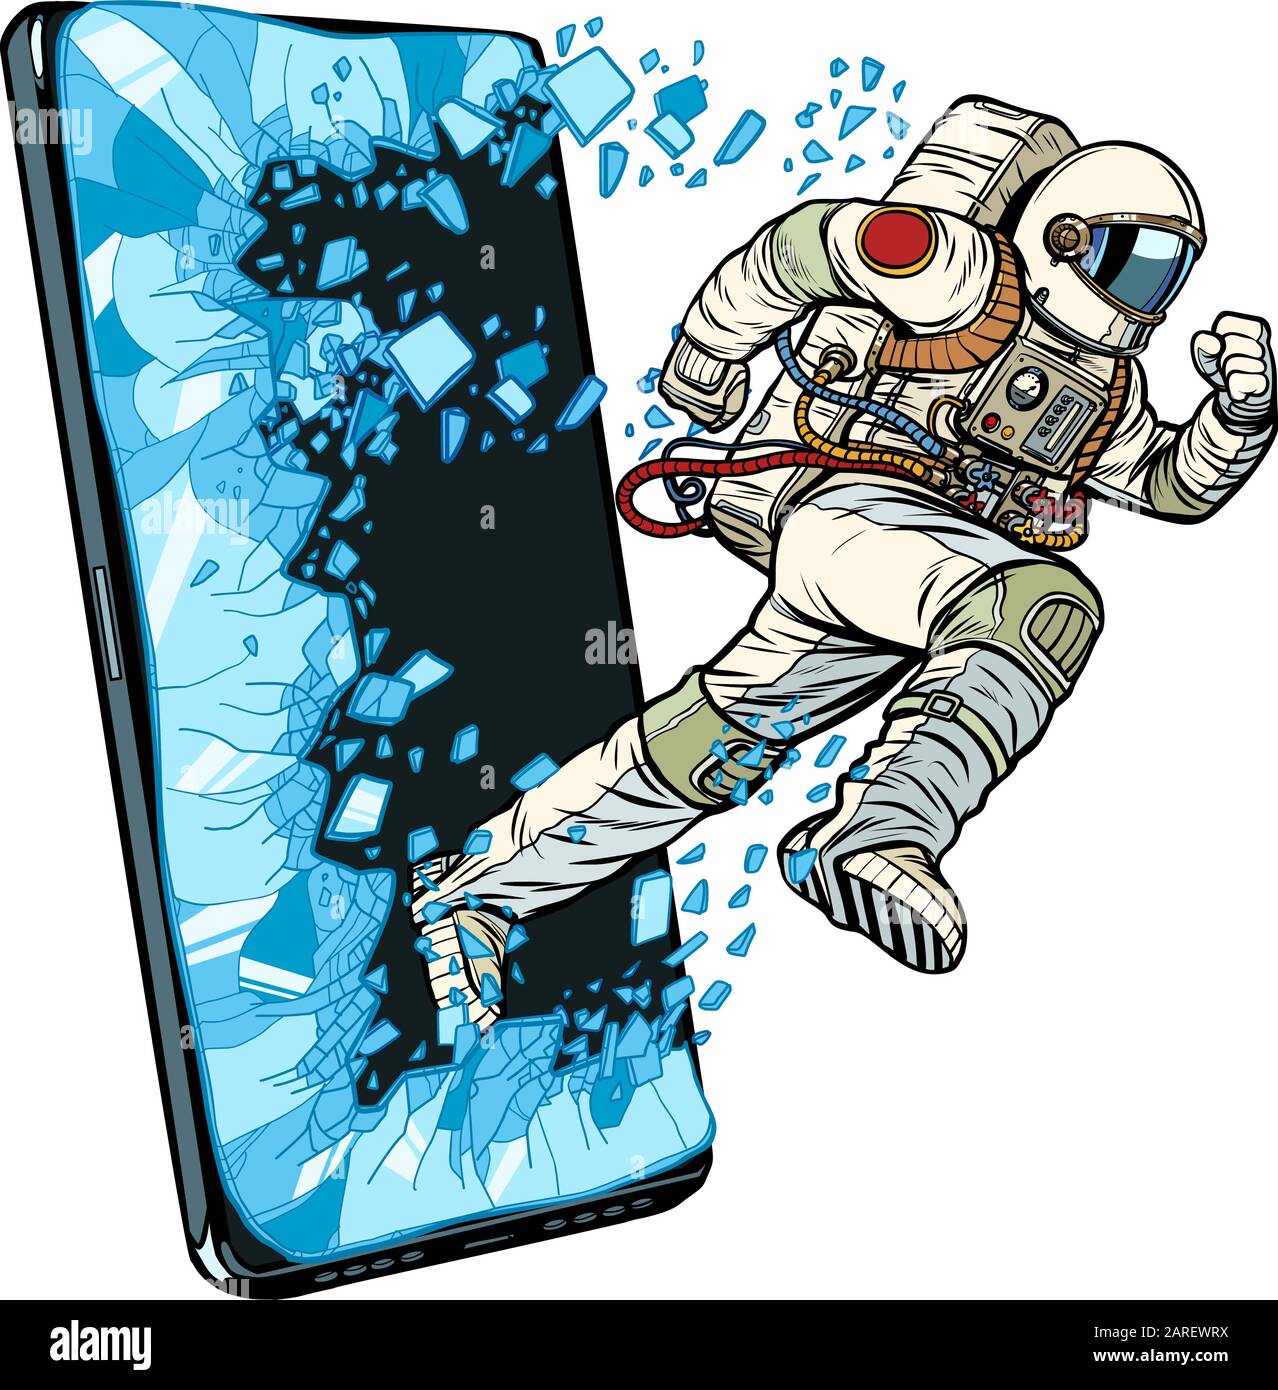 Concetto di applicazioni online scientifiche. L'astronauta passa attraverso uno smartphone Illustrazione Vettoriale